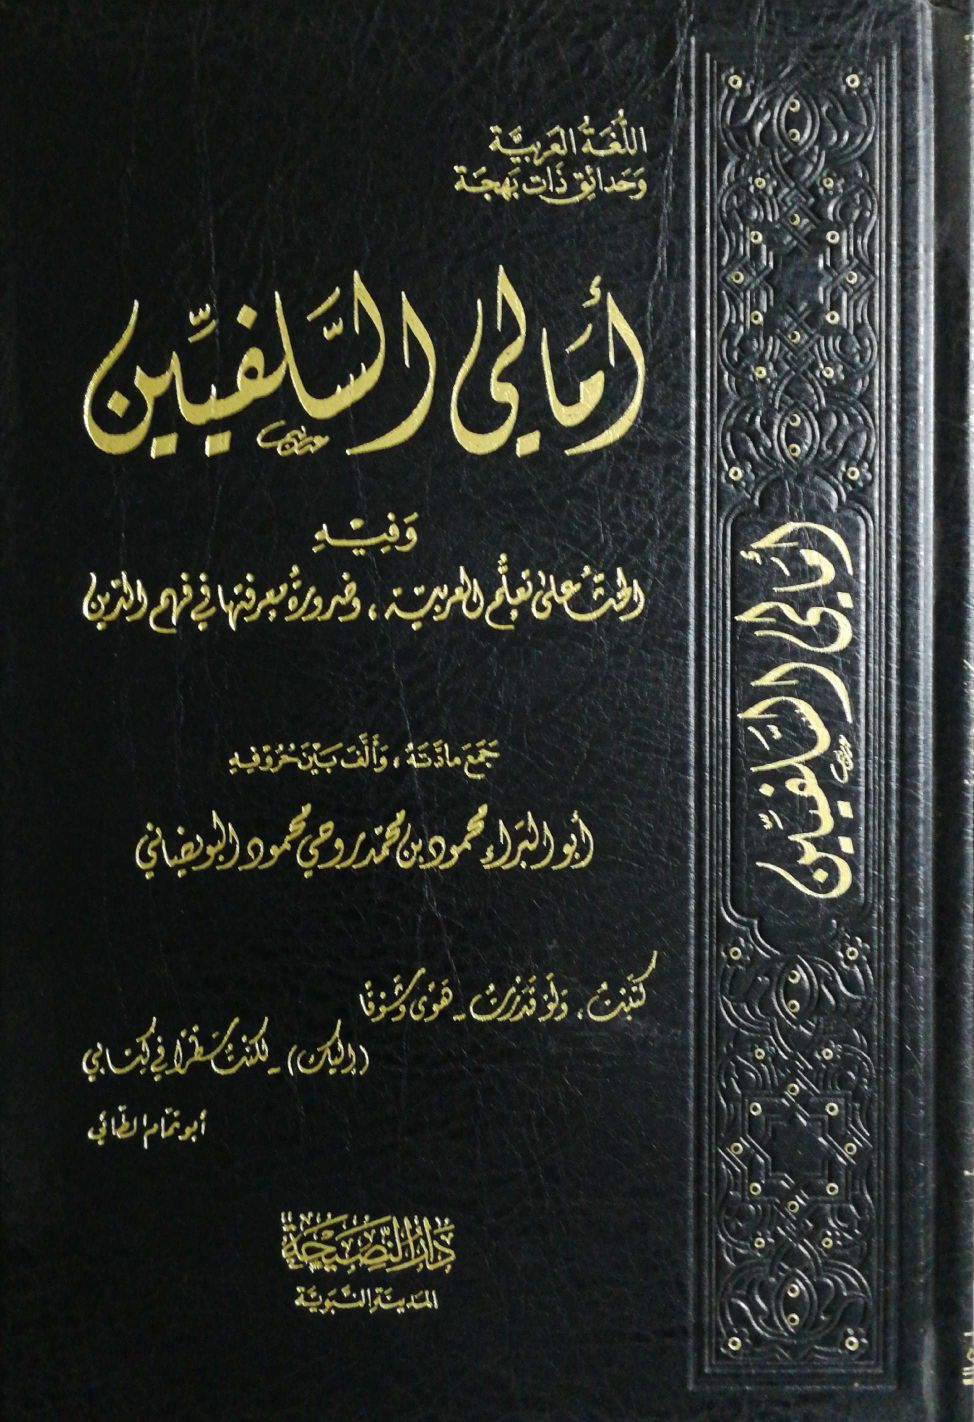 أمالي السلفيين وفيه الحث على تعلم العربية وضرورة معرفتها في فهم الدين